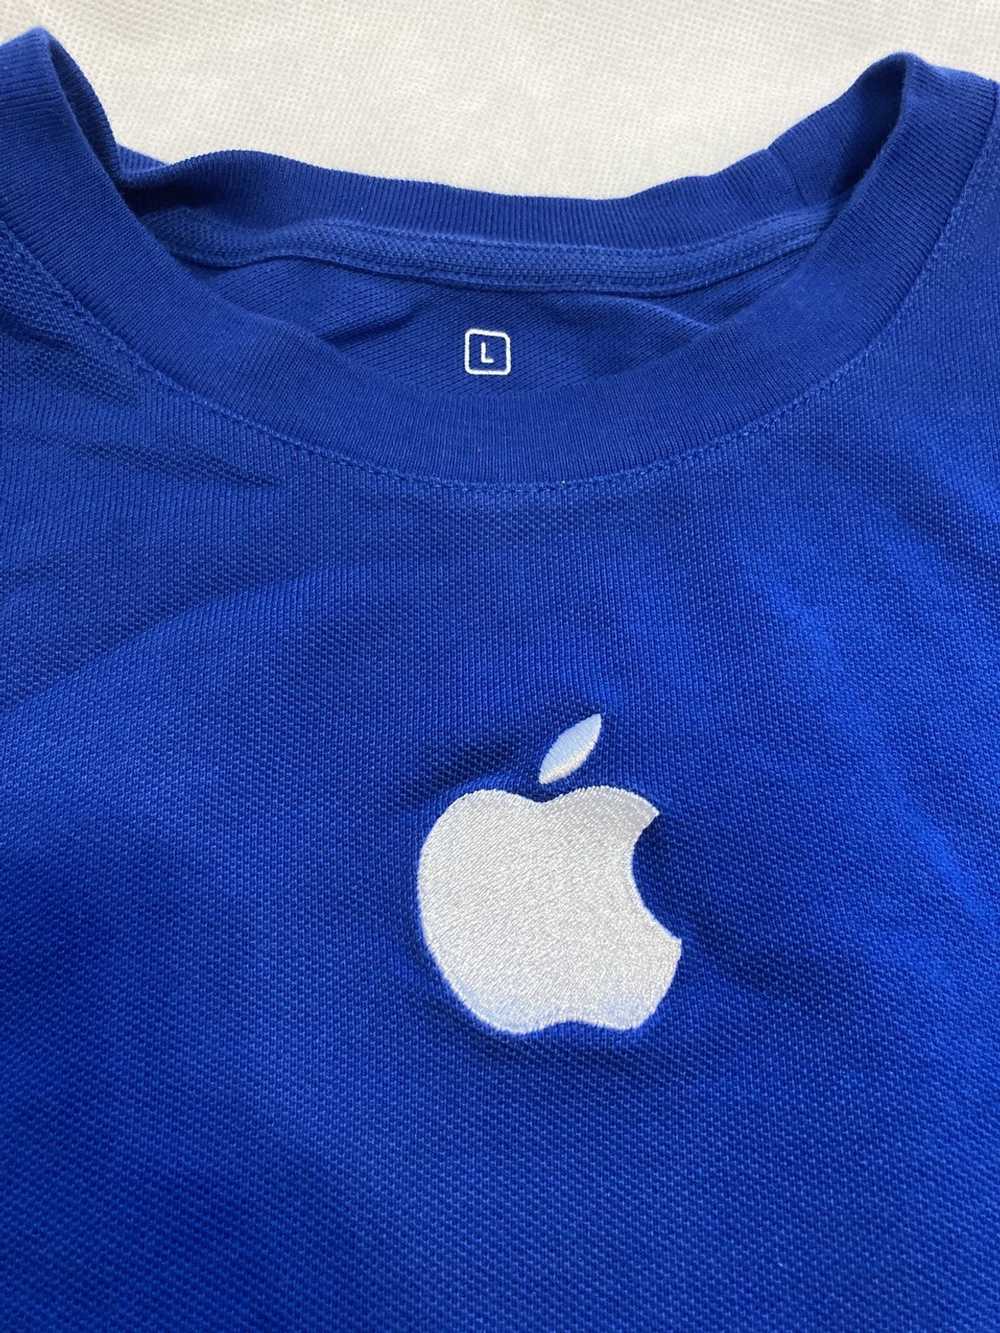 Apple × Vintage VTG Y2K Apple employee shirt - image 2